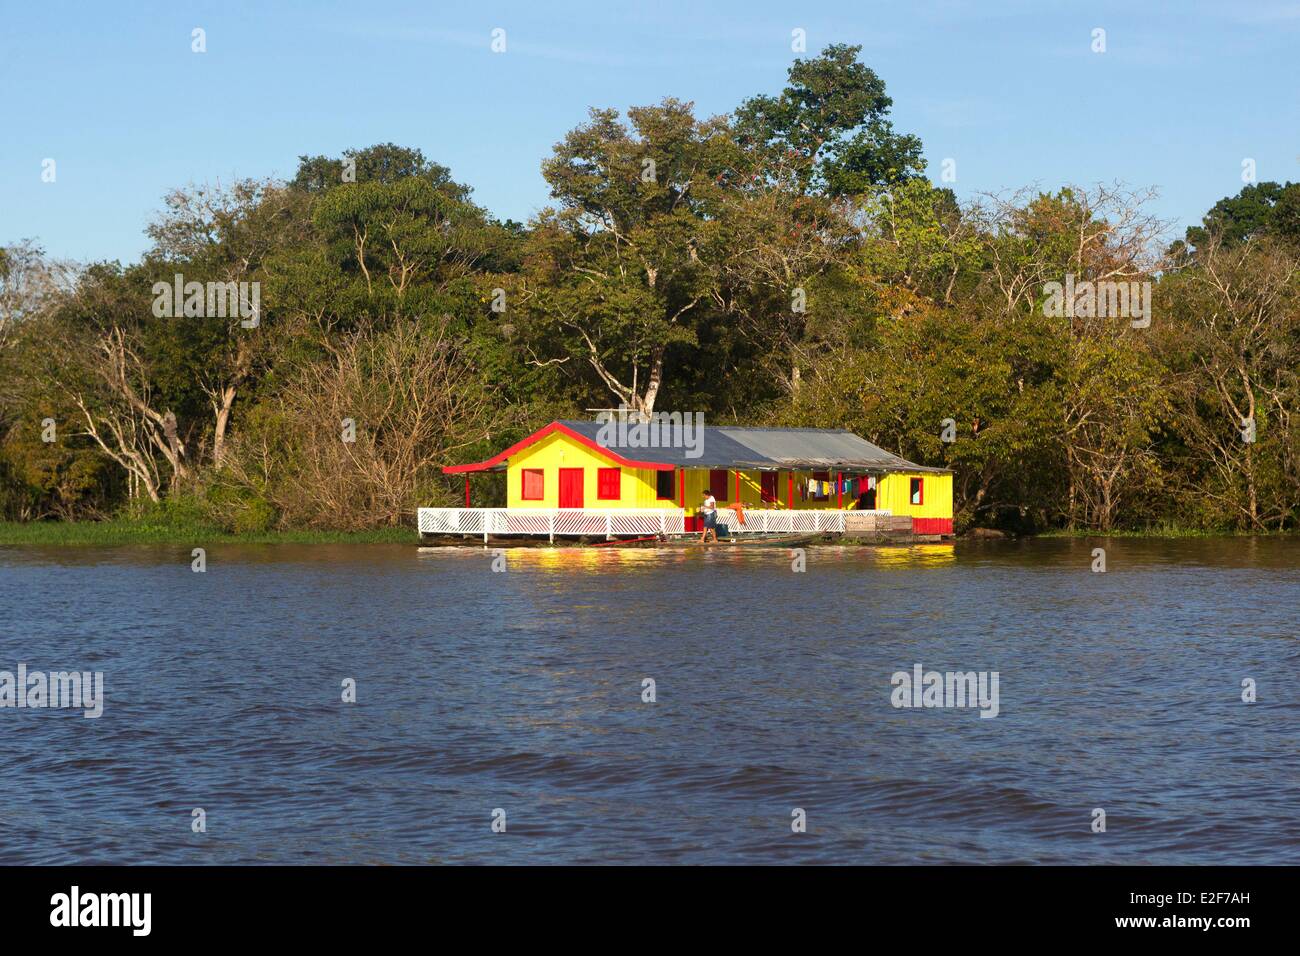 Brazil, Amazonas State, Manaus, Amazon river basin, Floating house Stock Photo